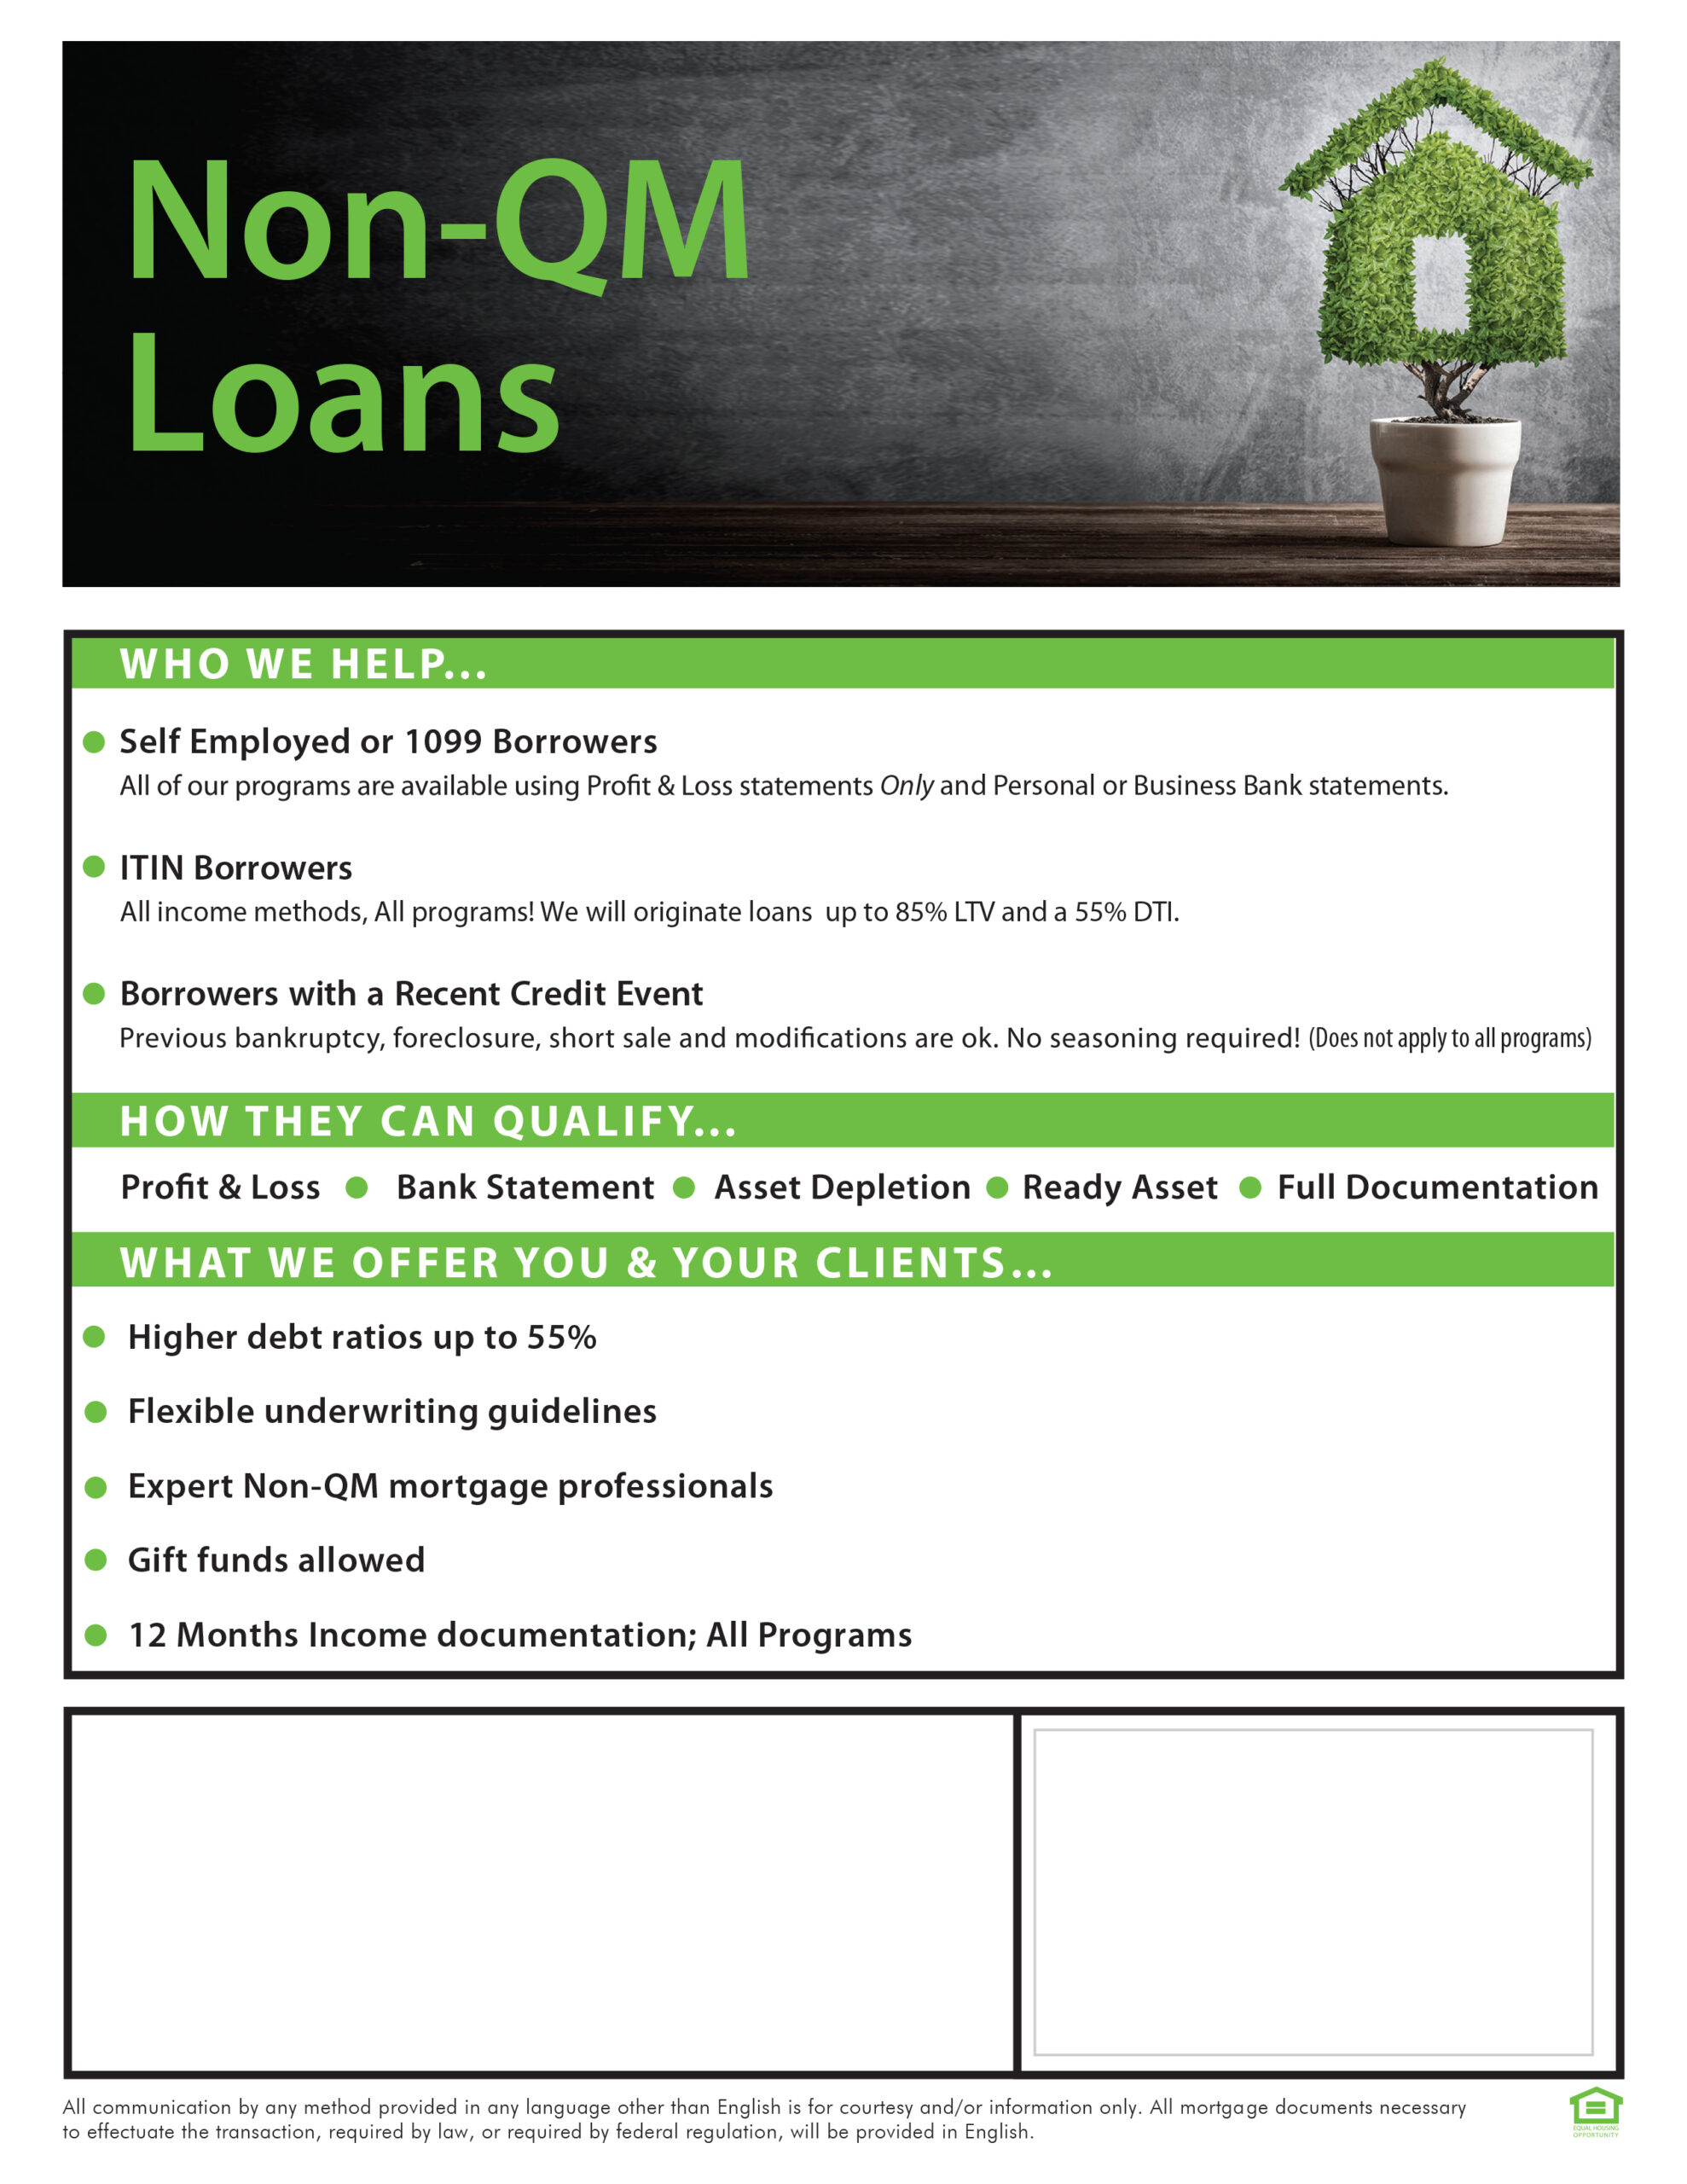 Non-QM Loans